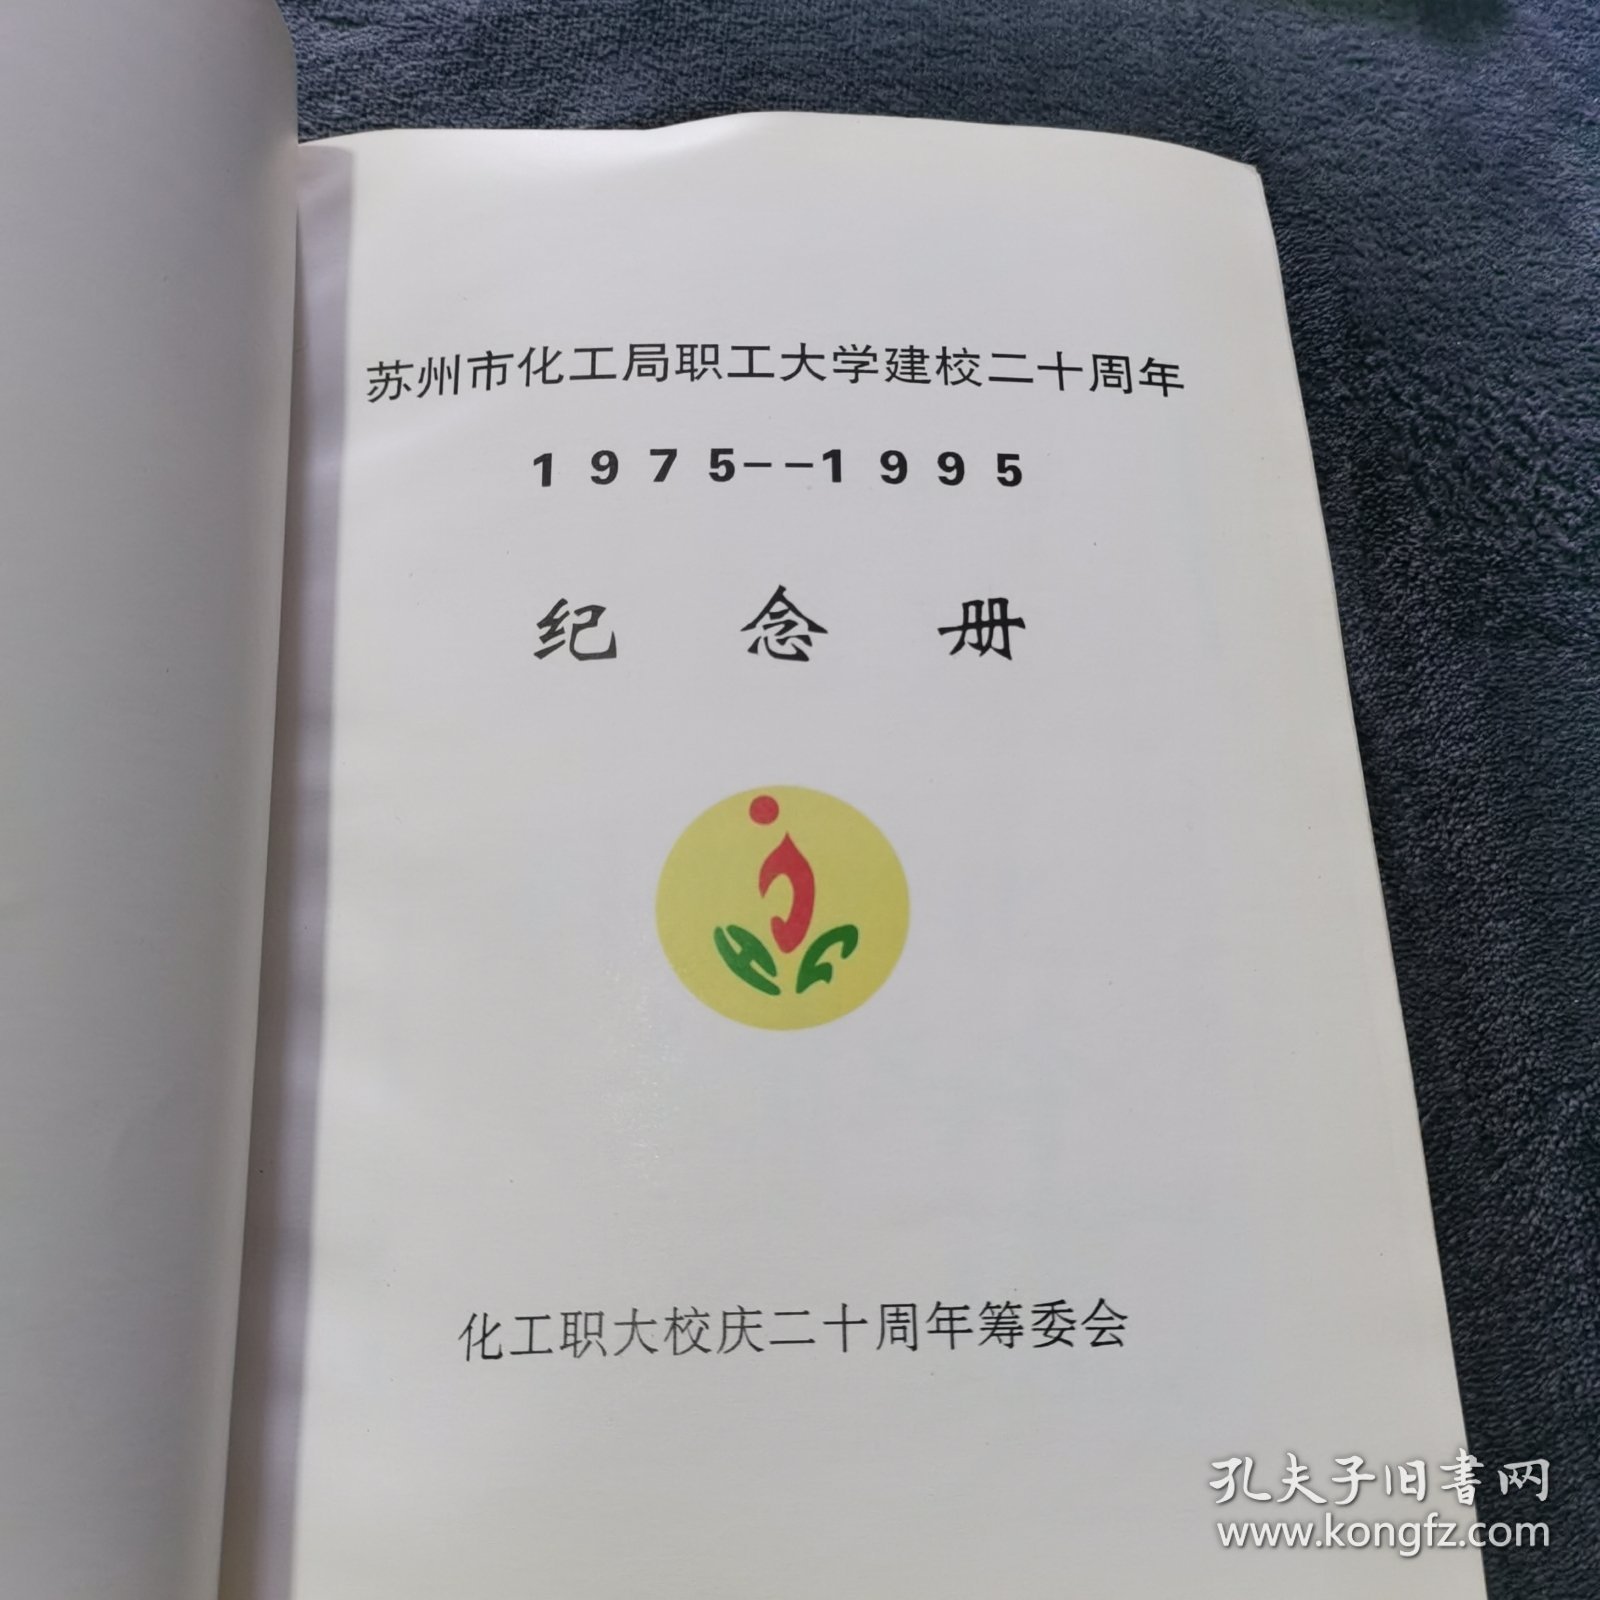 苏州市化工局职工大学建校二十周年纪念册